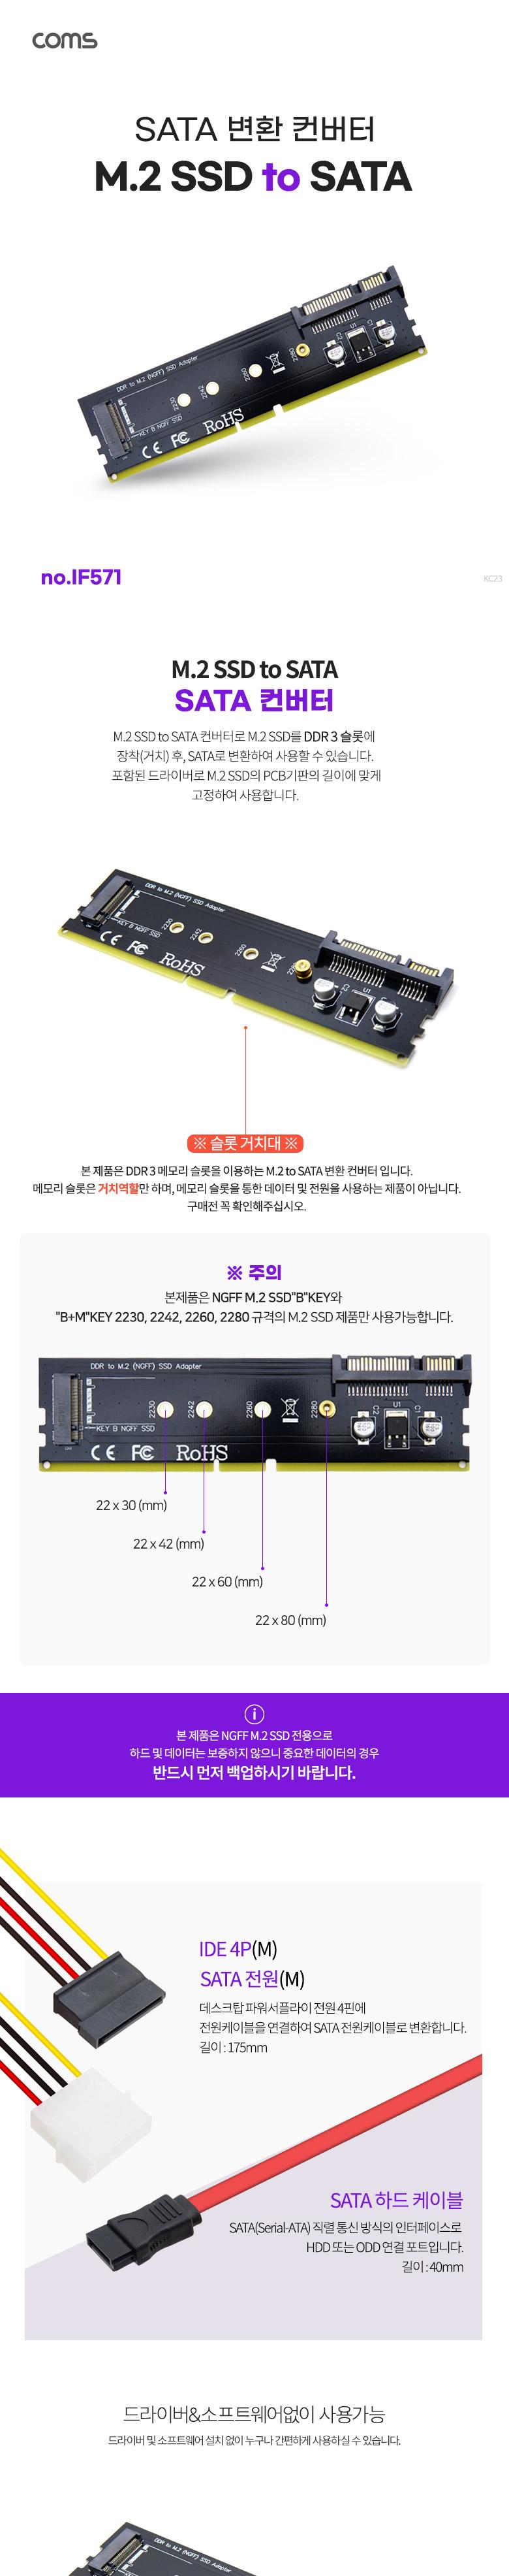 Coms DDR3 ȯ  M.2 NGFF SSD Key B to DDR3 + SATA 7P+15P ȯ ī. SATA ̺. SATA to IDE  ̺ ͺȯ ȯ  ȯ  SATA SATAȯ SATA SDDTOSATA SDDTOSATA